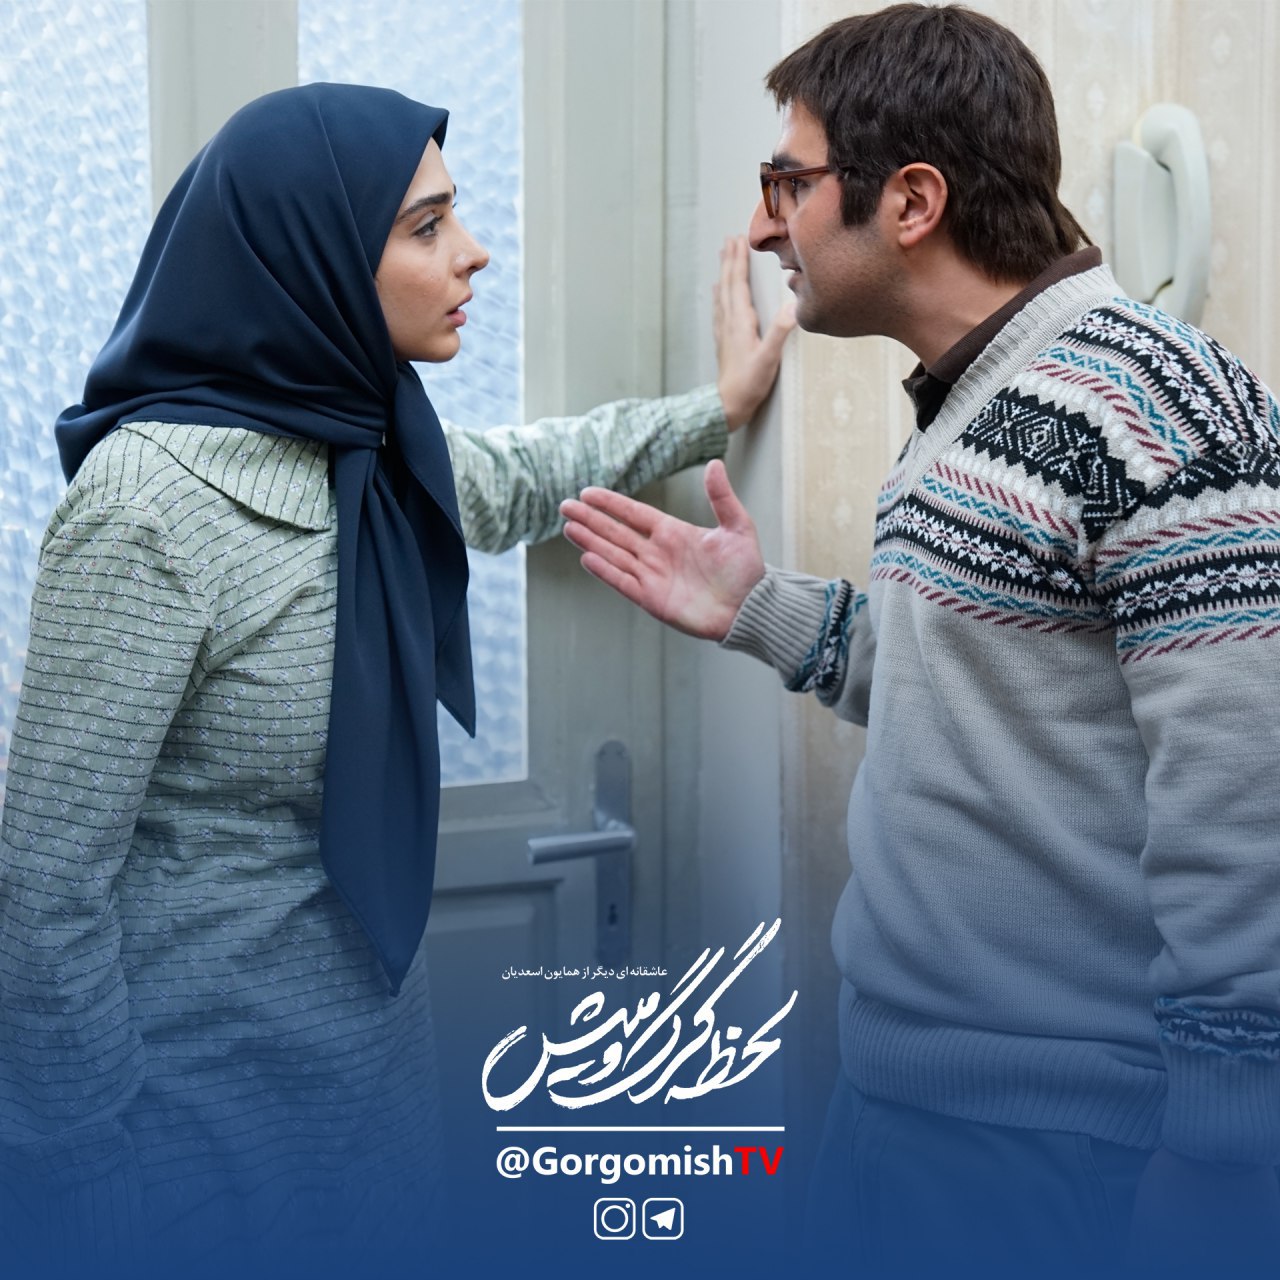 ناصر سجادی حسینی در صحنه سریال تلویزیونی لحظه گرگ و میش به همراه المیرا دهقانی